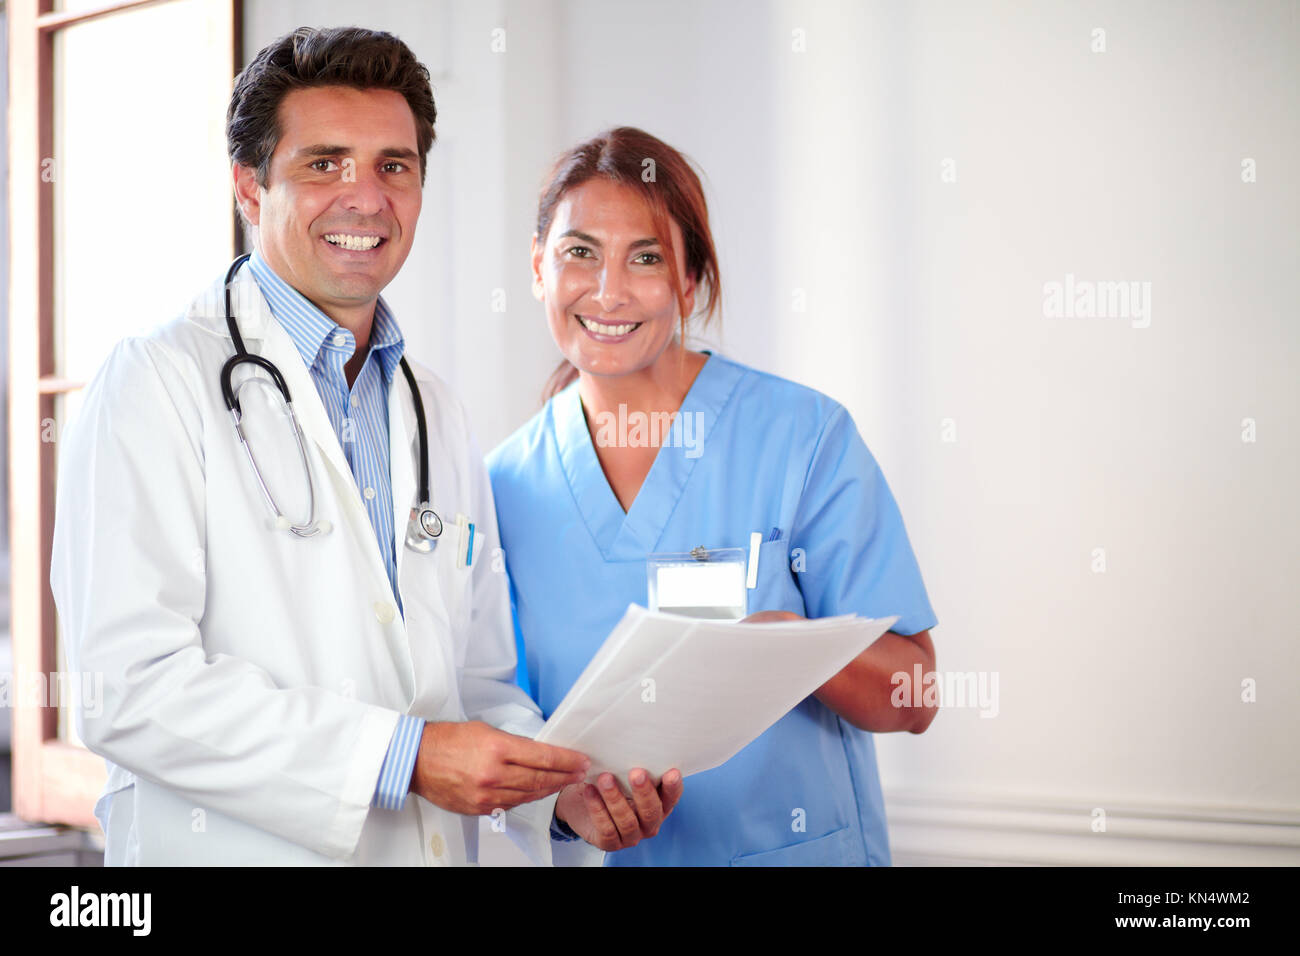 Porträt eines medizinischen Kollegen suchen und sie lächelnd, während sie Dokumente - Copyspace. Stockfoto